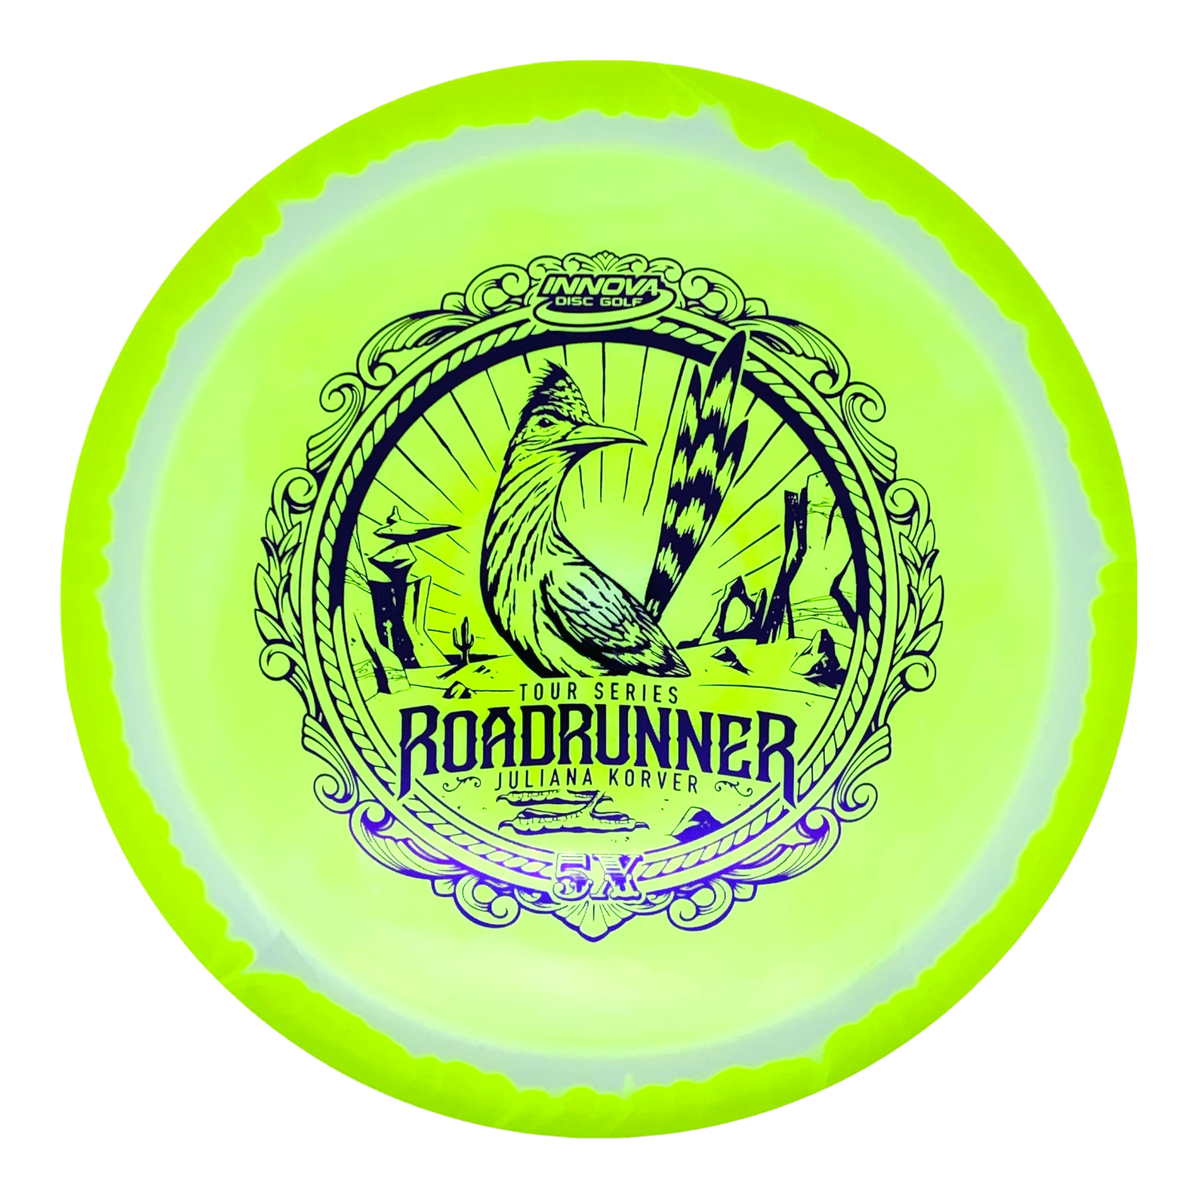 Innova Halo Star Roadrunner - Juliana Korver Tour Series 2022